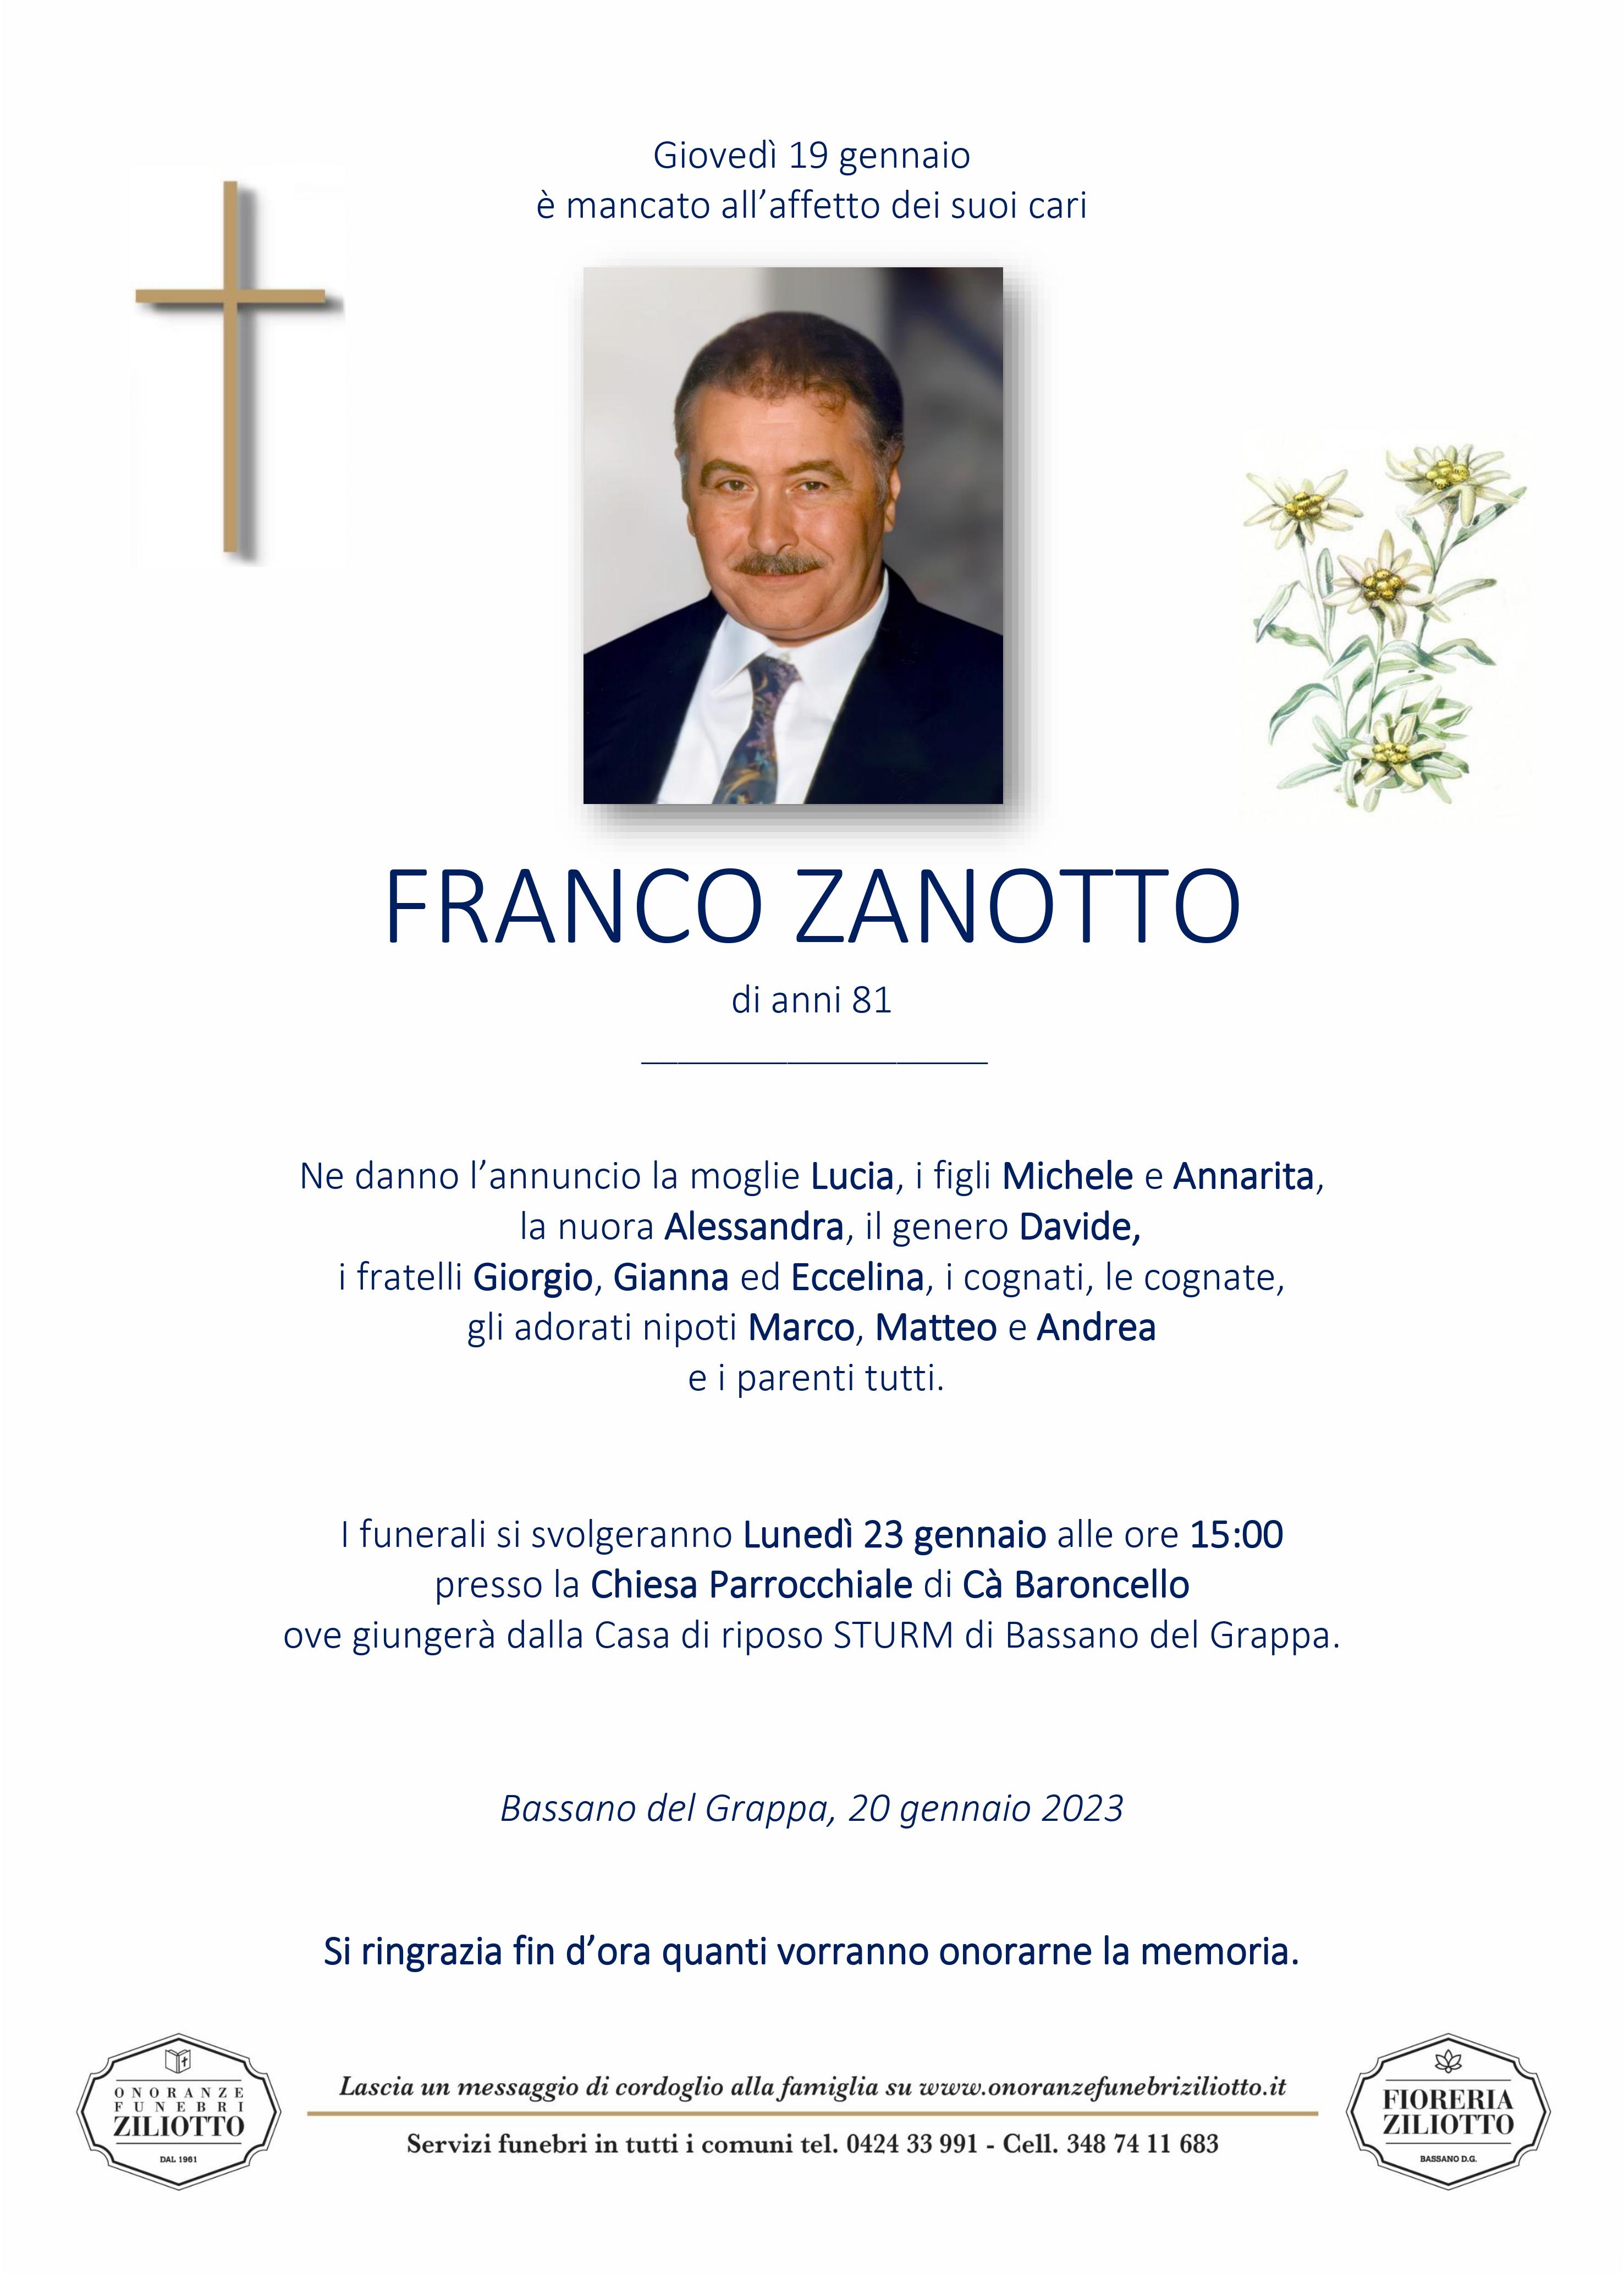 Franco Zanotto - 81 anni - Bassano del Grappa